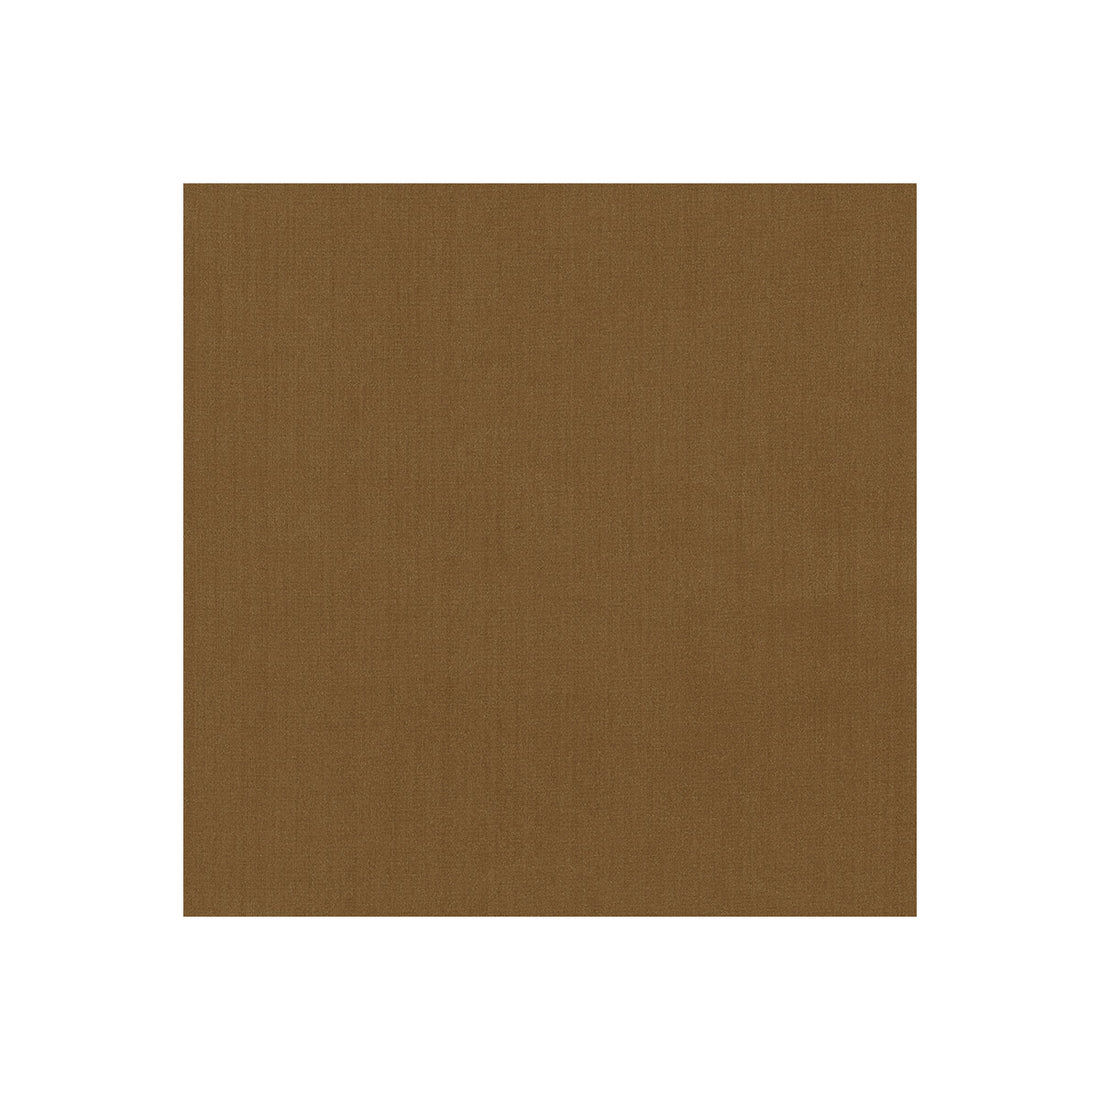 Kravet Basics fabric in 35916-6 color - pattern 35916.6.0 - by Kravet Basics